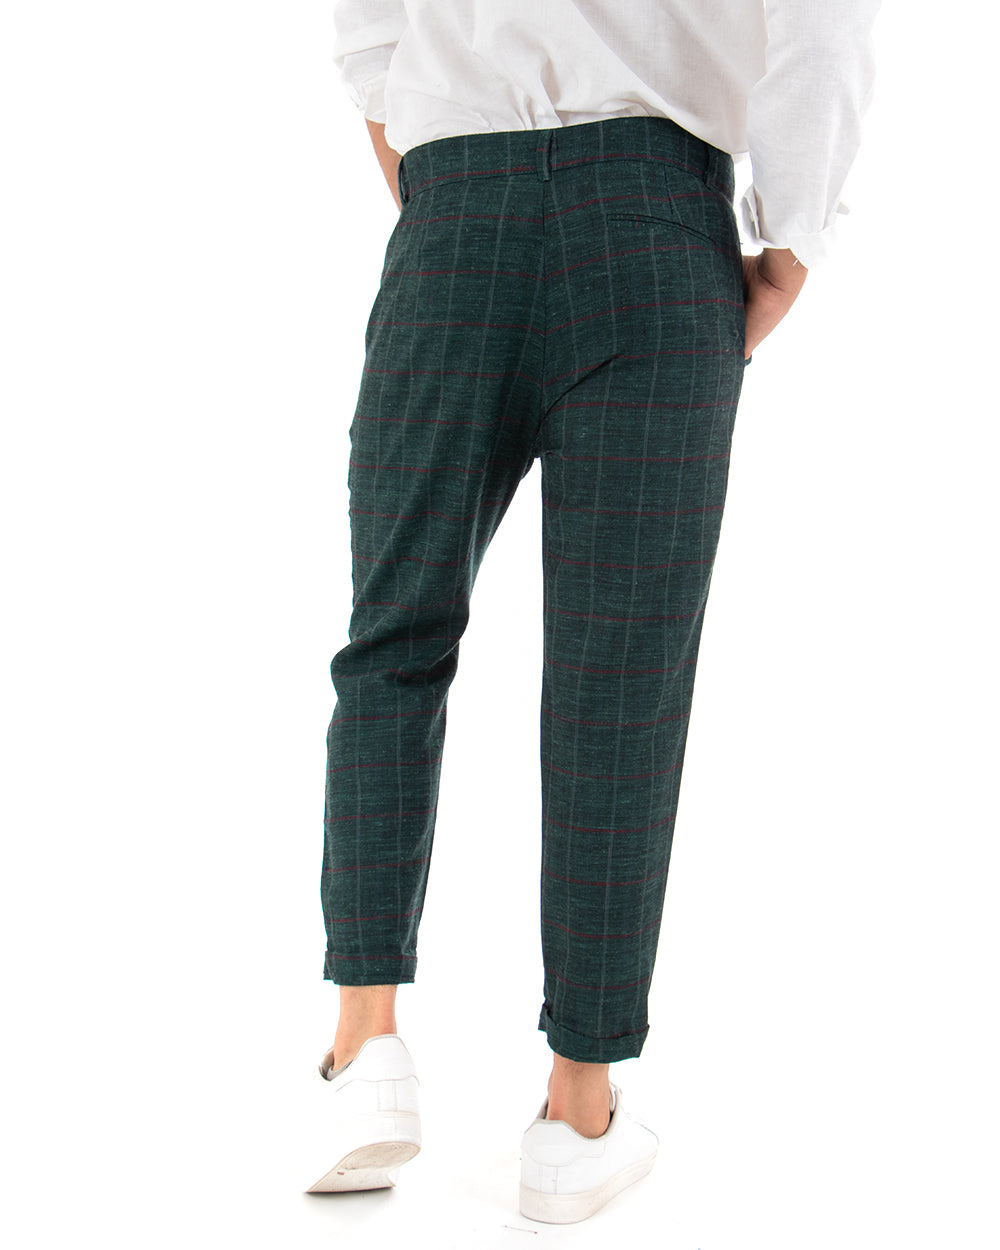 Pantaloni Uomo Tasca America Lino Classico Sartoriale Con Pinces Scozzese Verde GIOSAL-P3827A